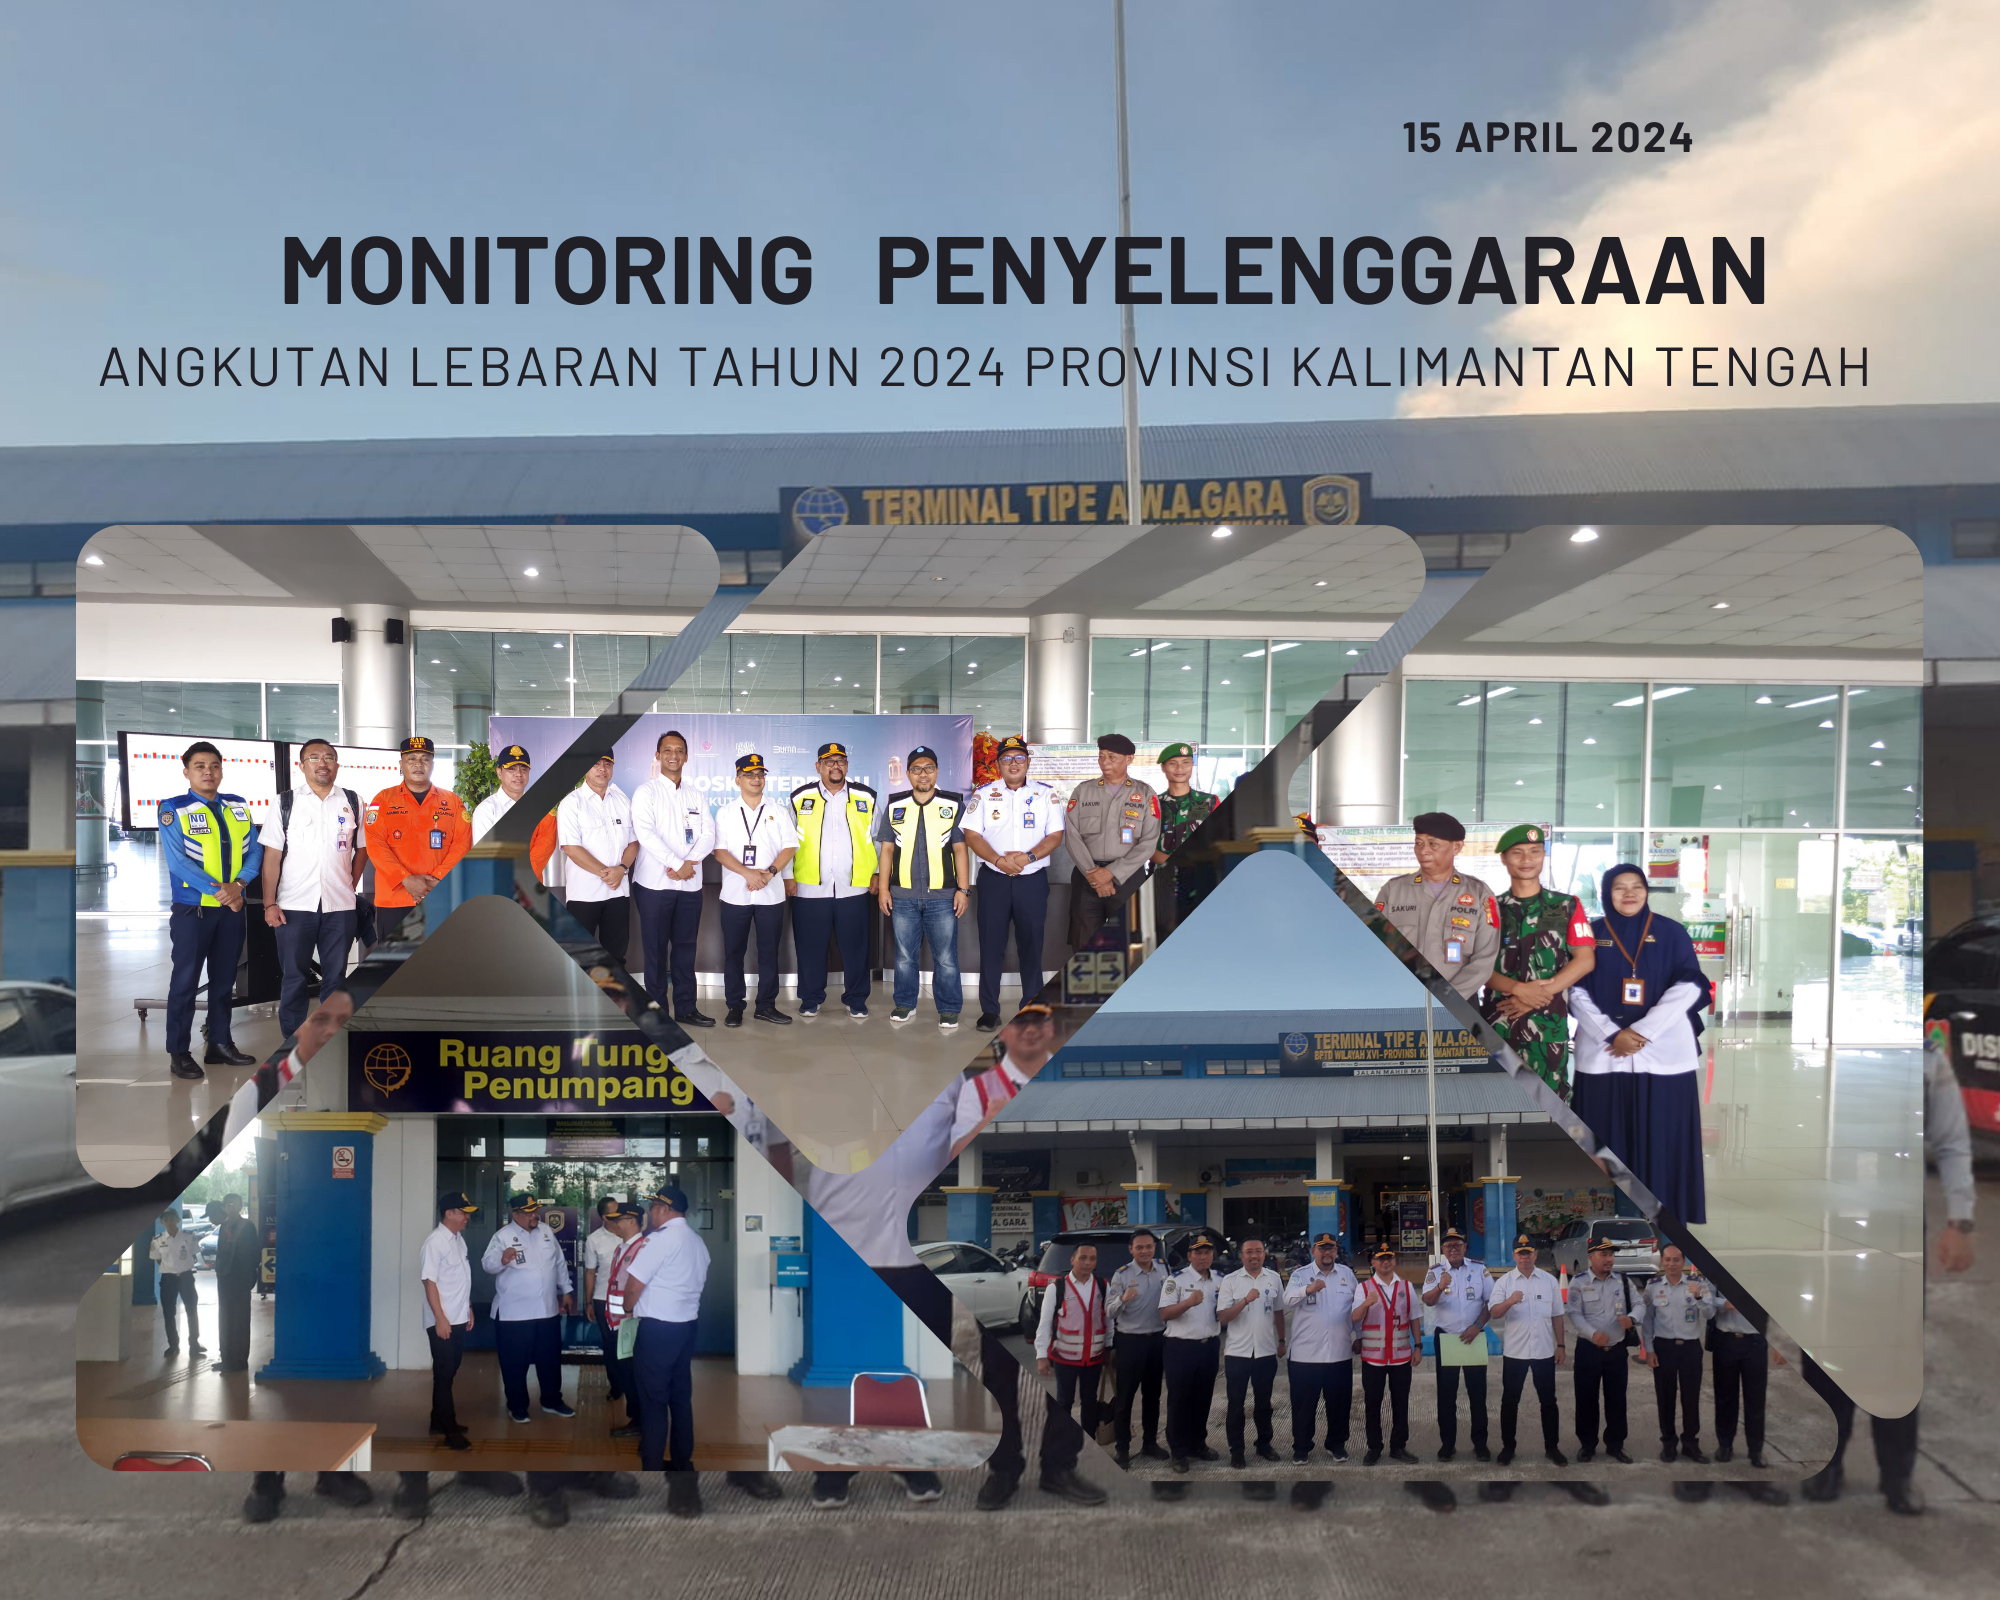 Stasiun Meteorologi Kelas I Tjilik Riwut Ikut Serta Melakukan Monitoring Penyelenggaraan Angkutan Lebaran 2024 di wilayah Kalimantan Tengah